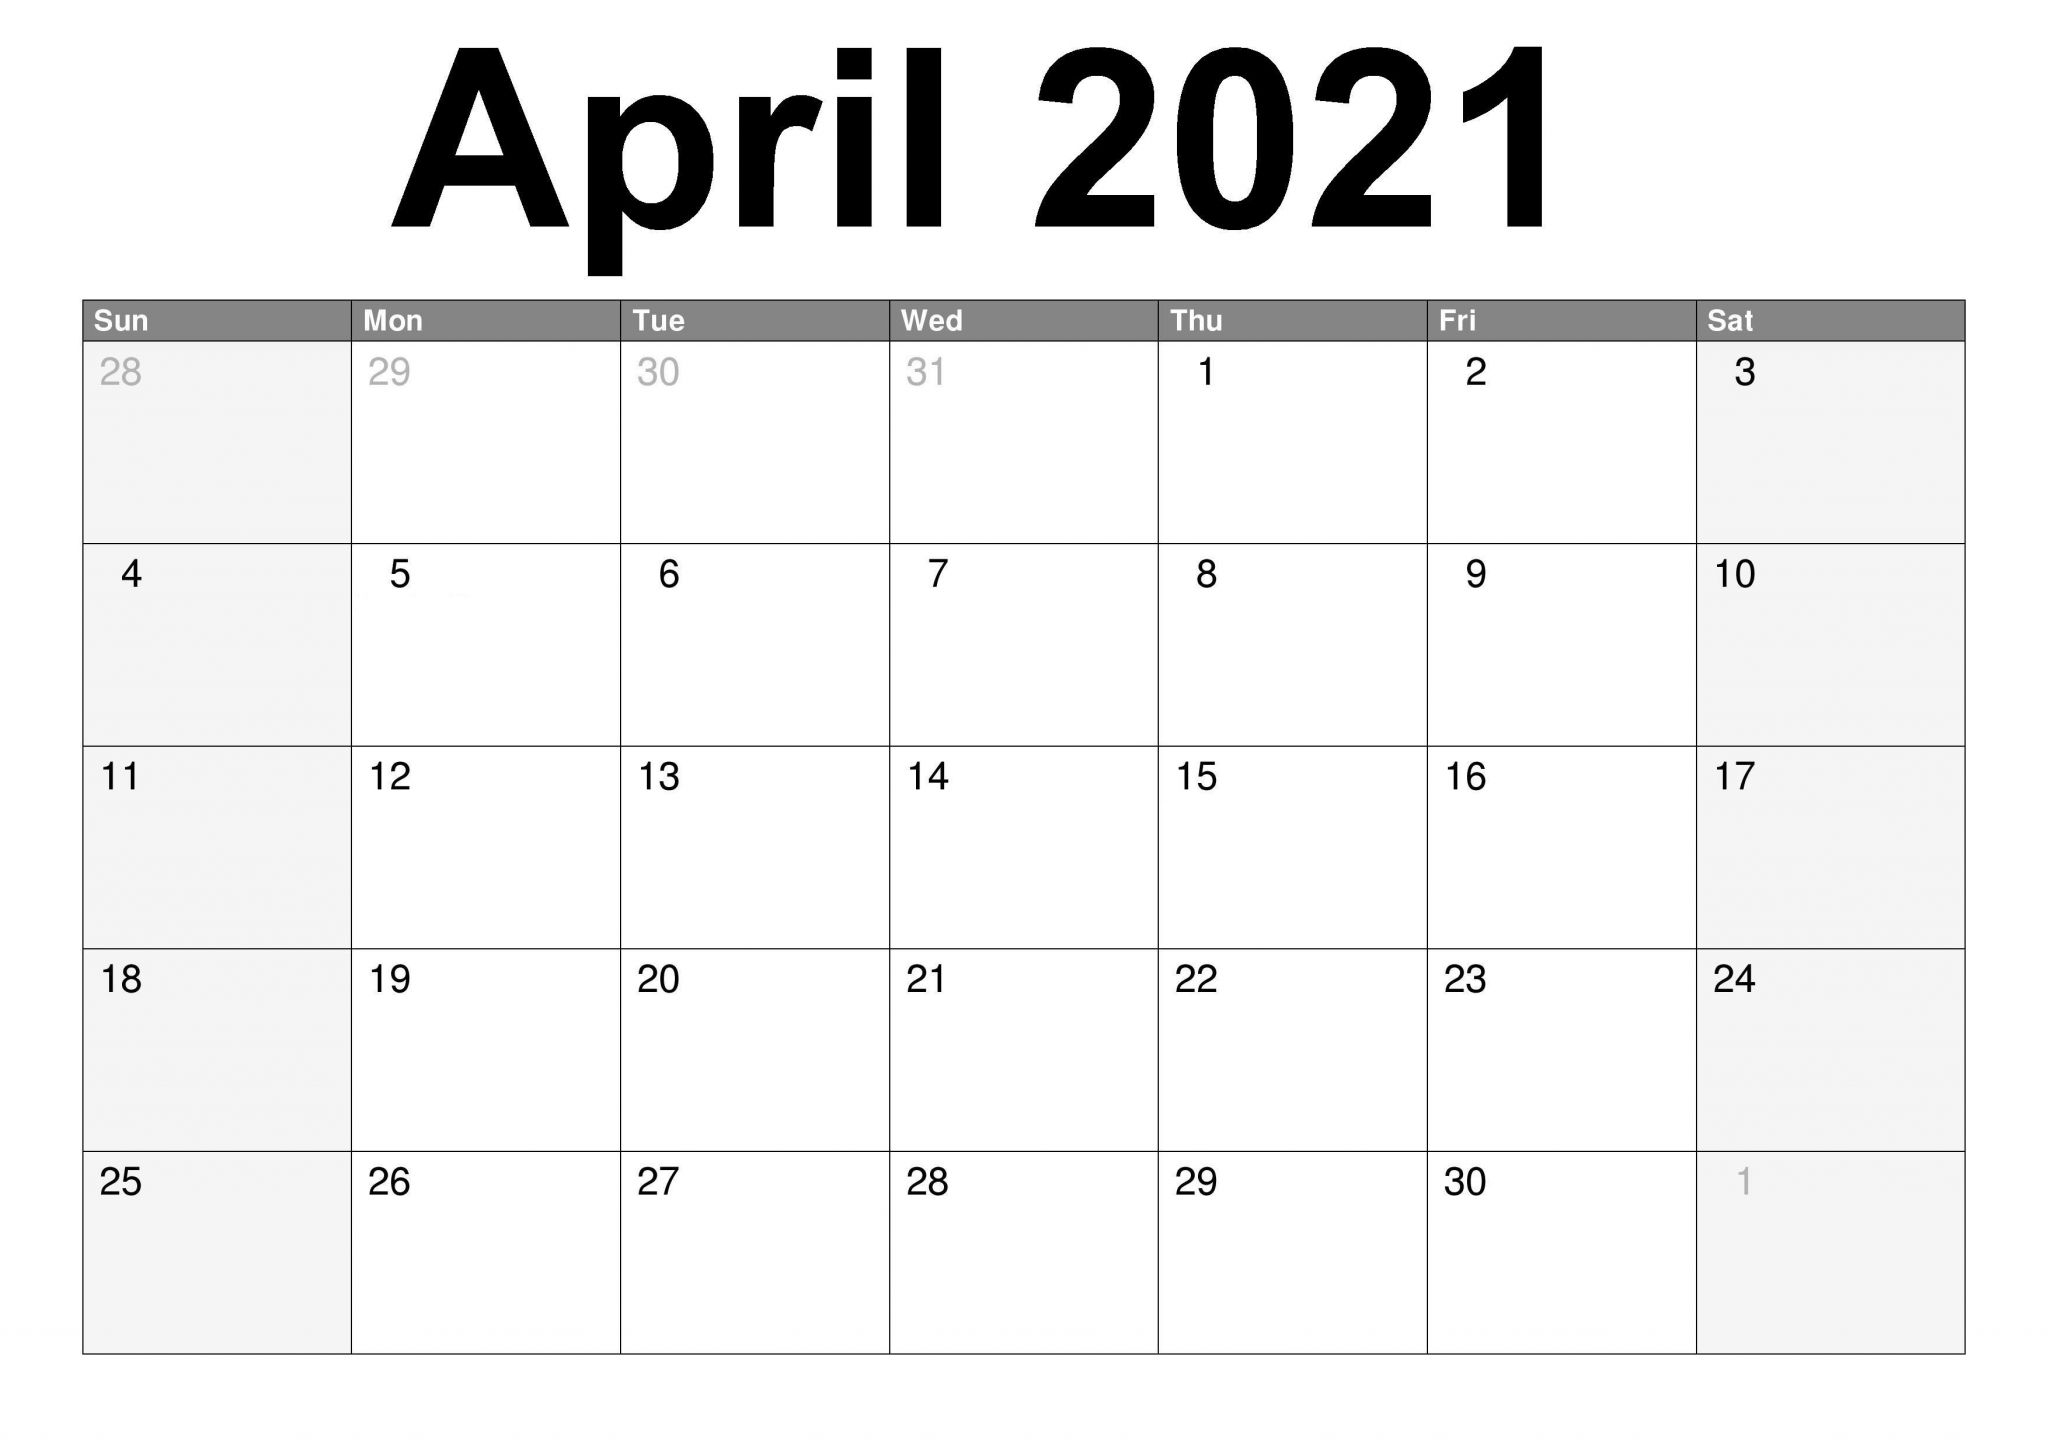 April Calendar 2021 with Holidays April Calendar 2021 Holidays Calendar Templates